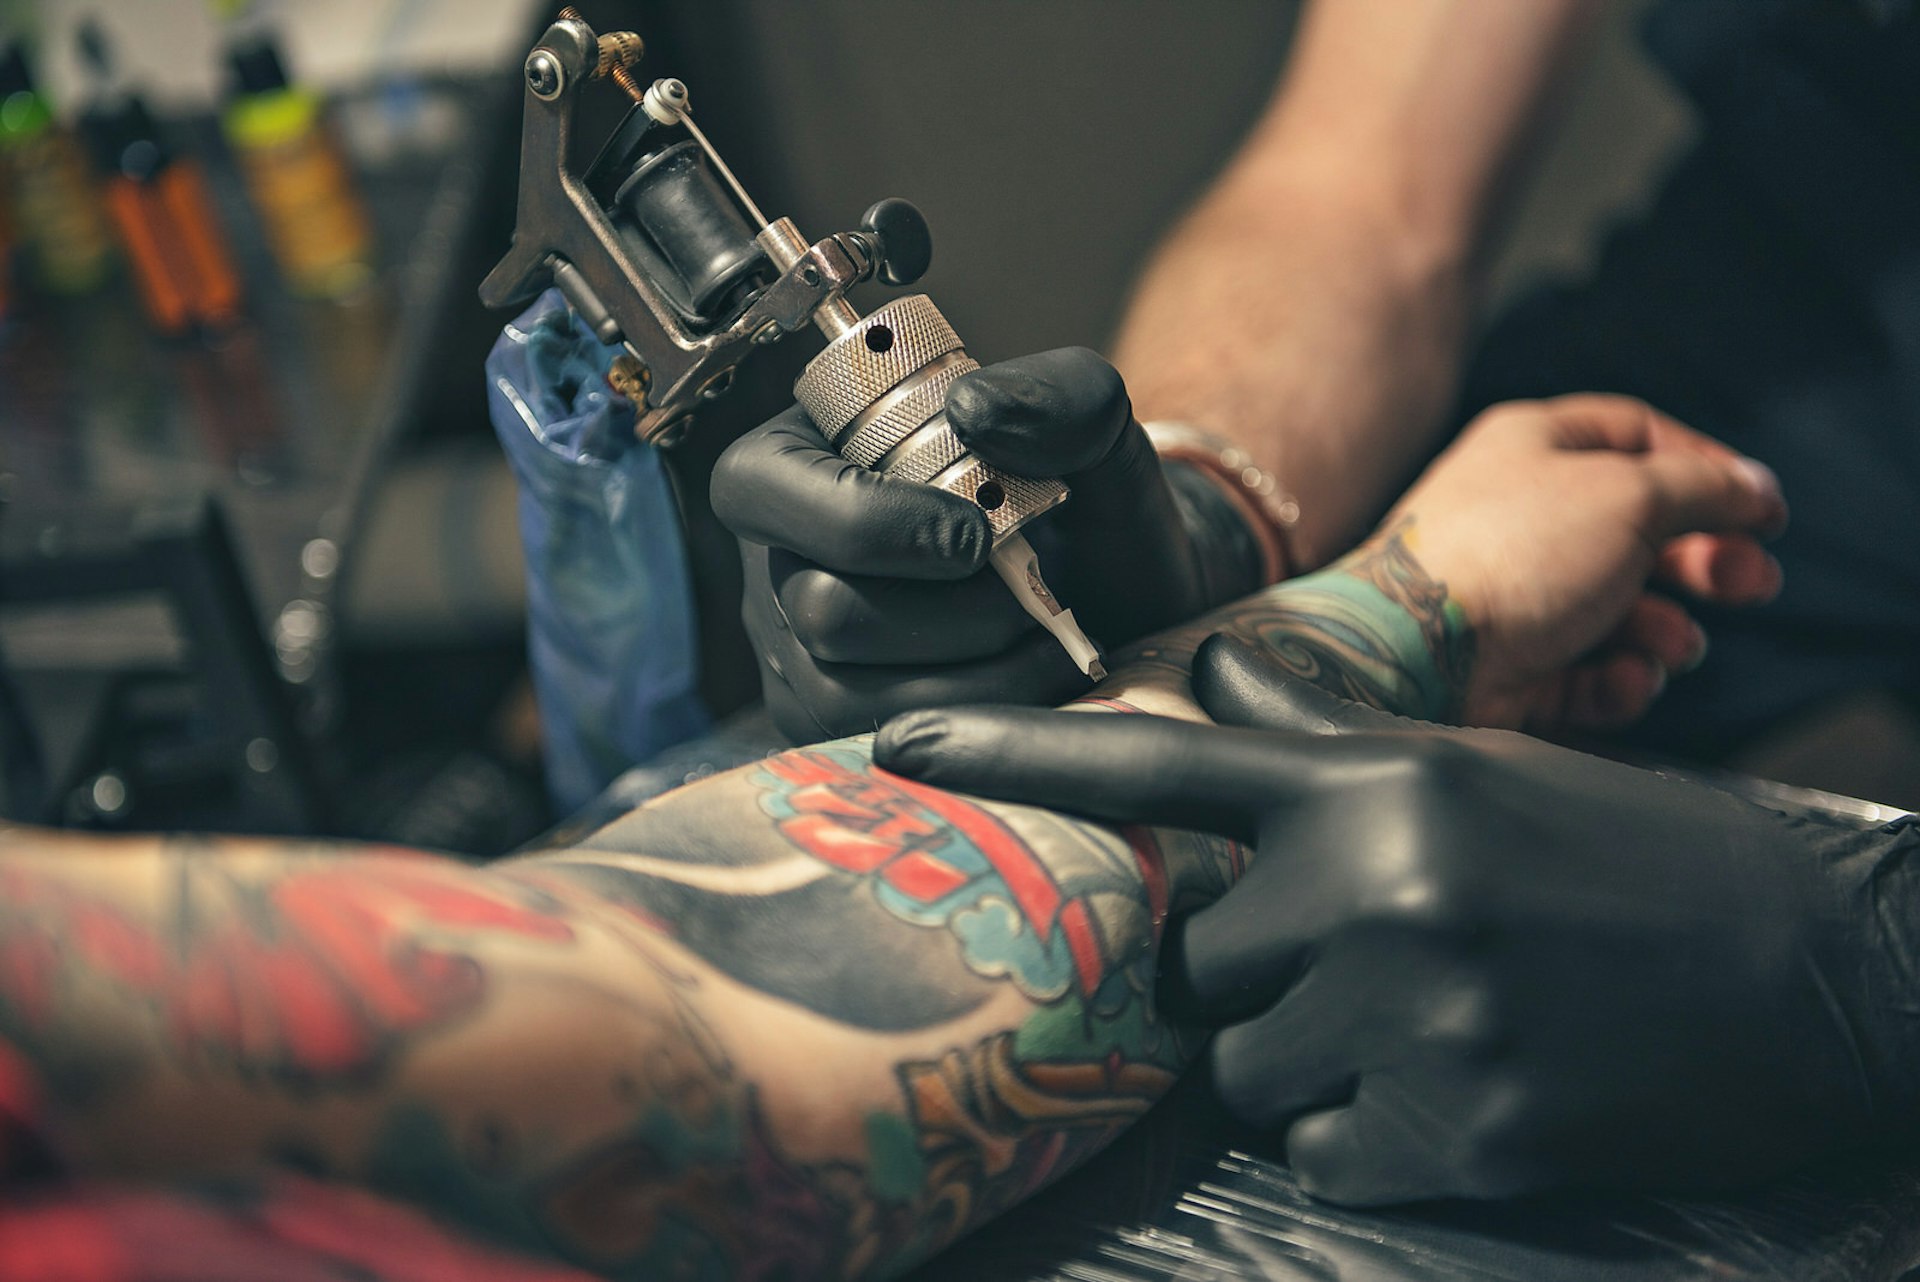 A tattoo artist tattoos a customer's arm